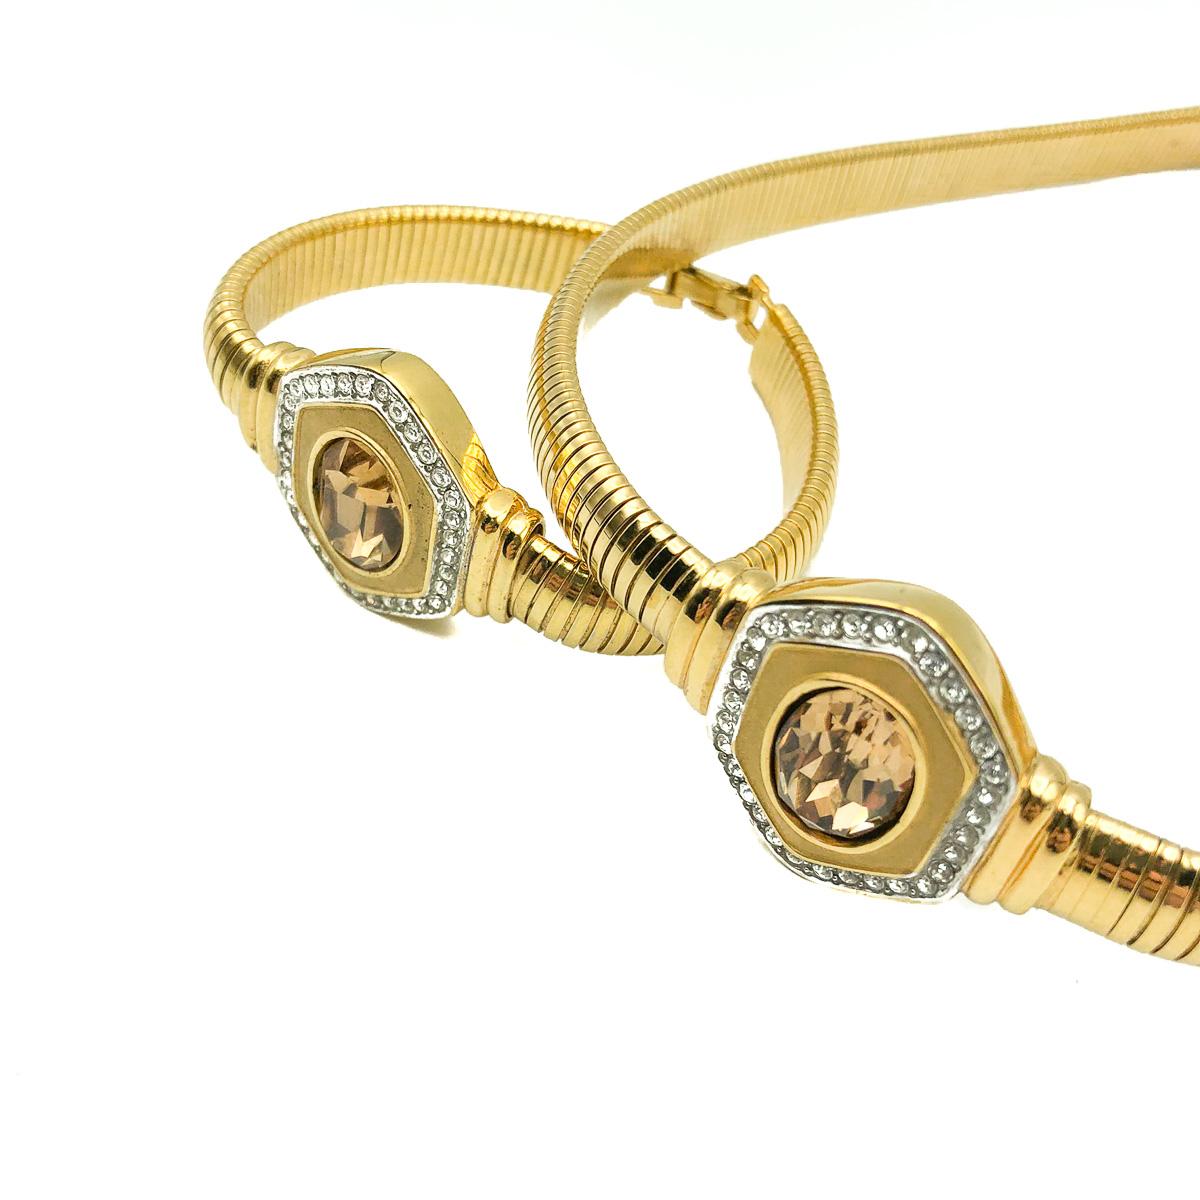 Un collier et un bracelet Lanvin Vintage divins. Réalisé en métal plaqué or et serti de cristaux. Le collier est terminé par l'accroche du logo Lanvin.  Objet vintage en très bon état. Signé. Collier d'environ 38 à 42 cm et bracelet de 18 cm.  Une